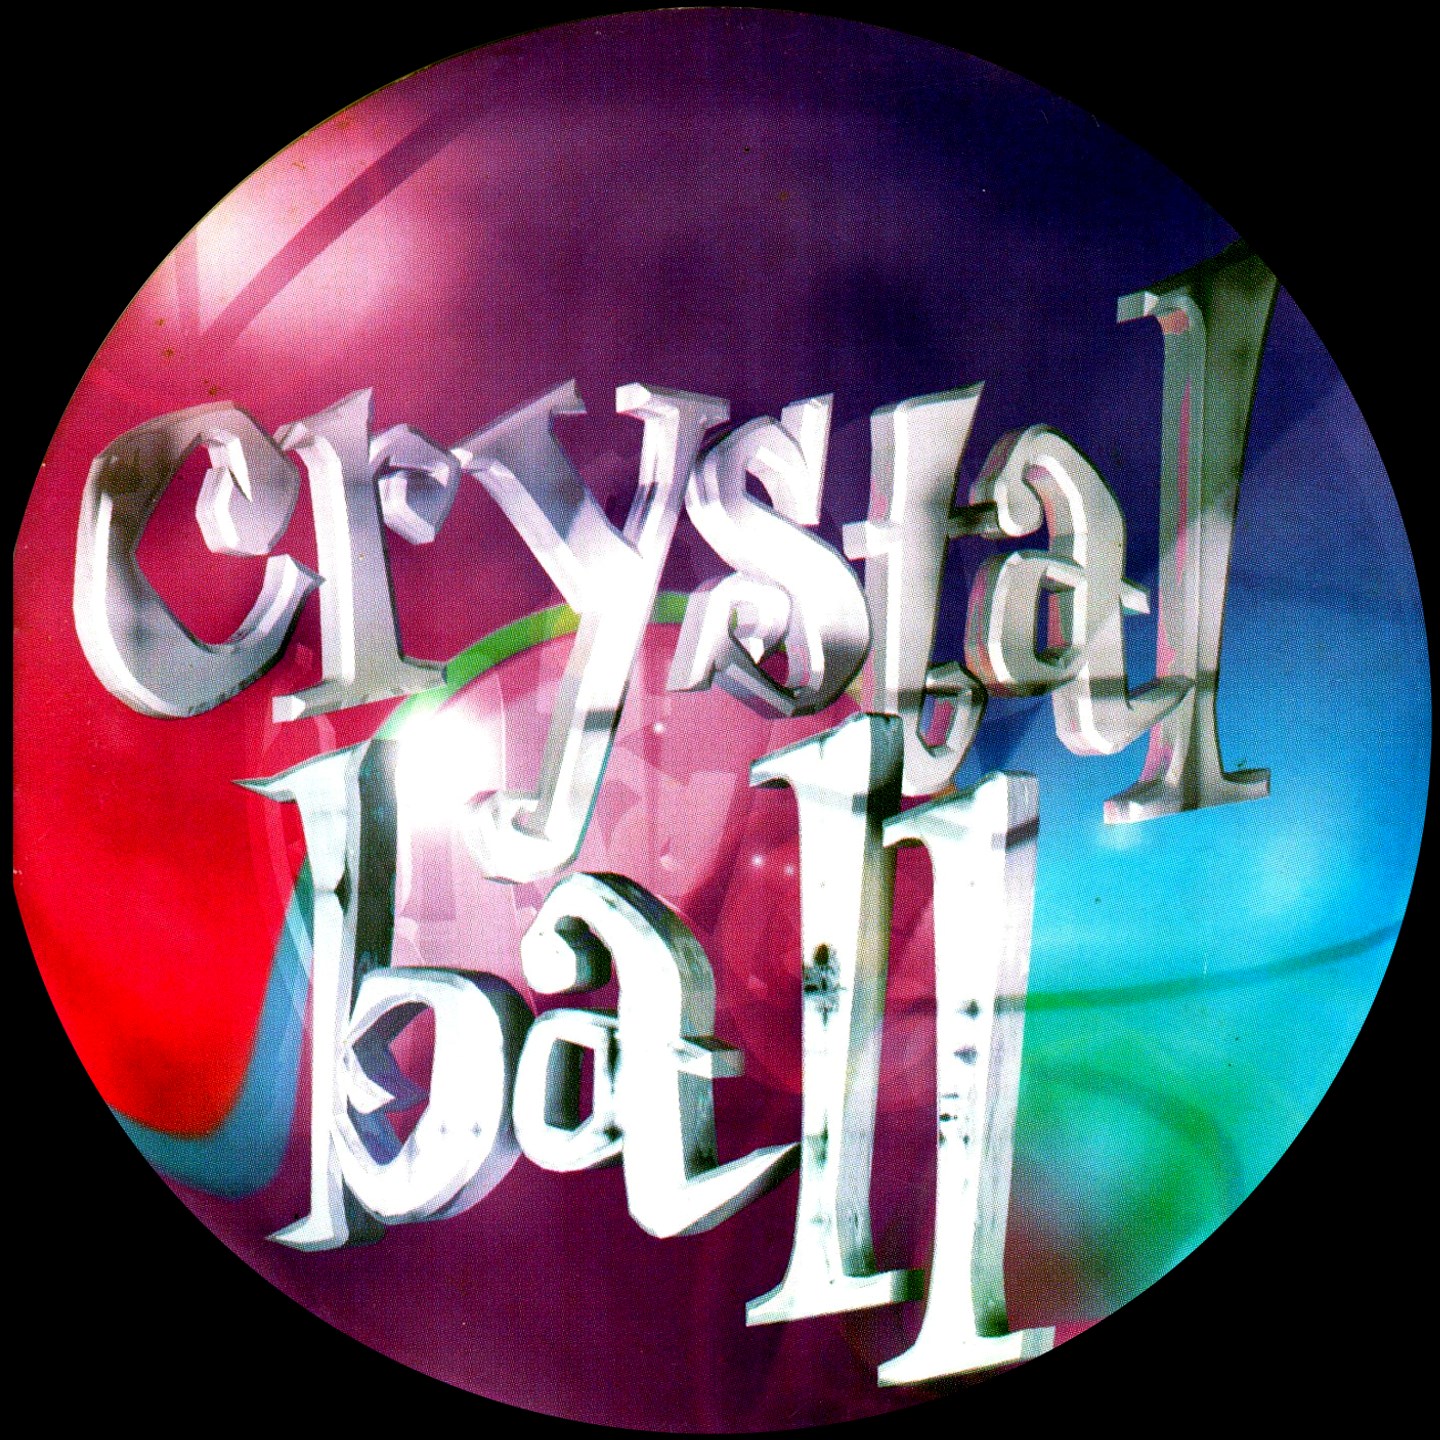 crystalball1.jpg